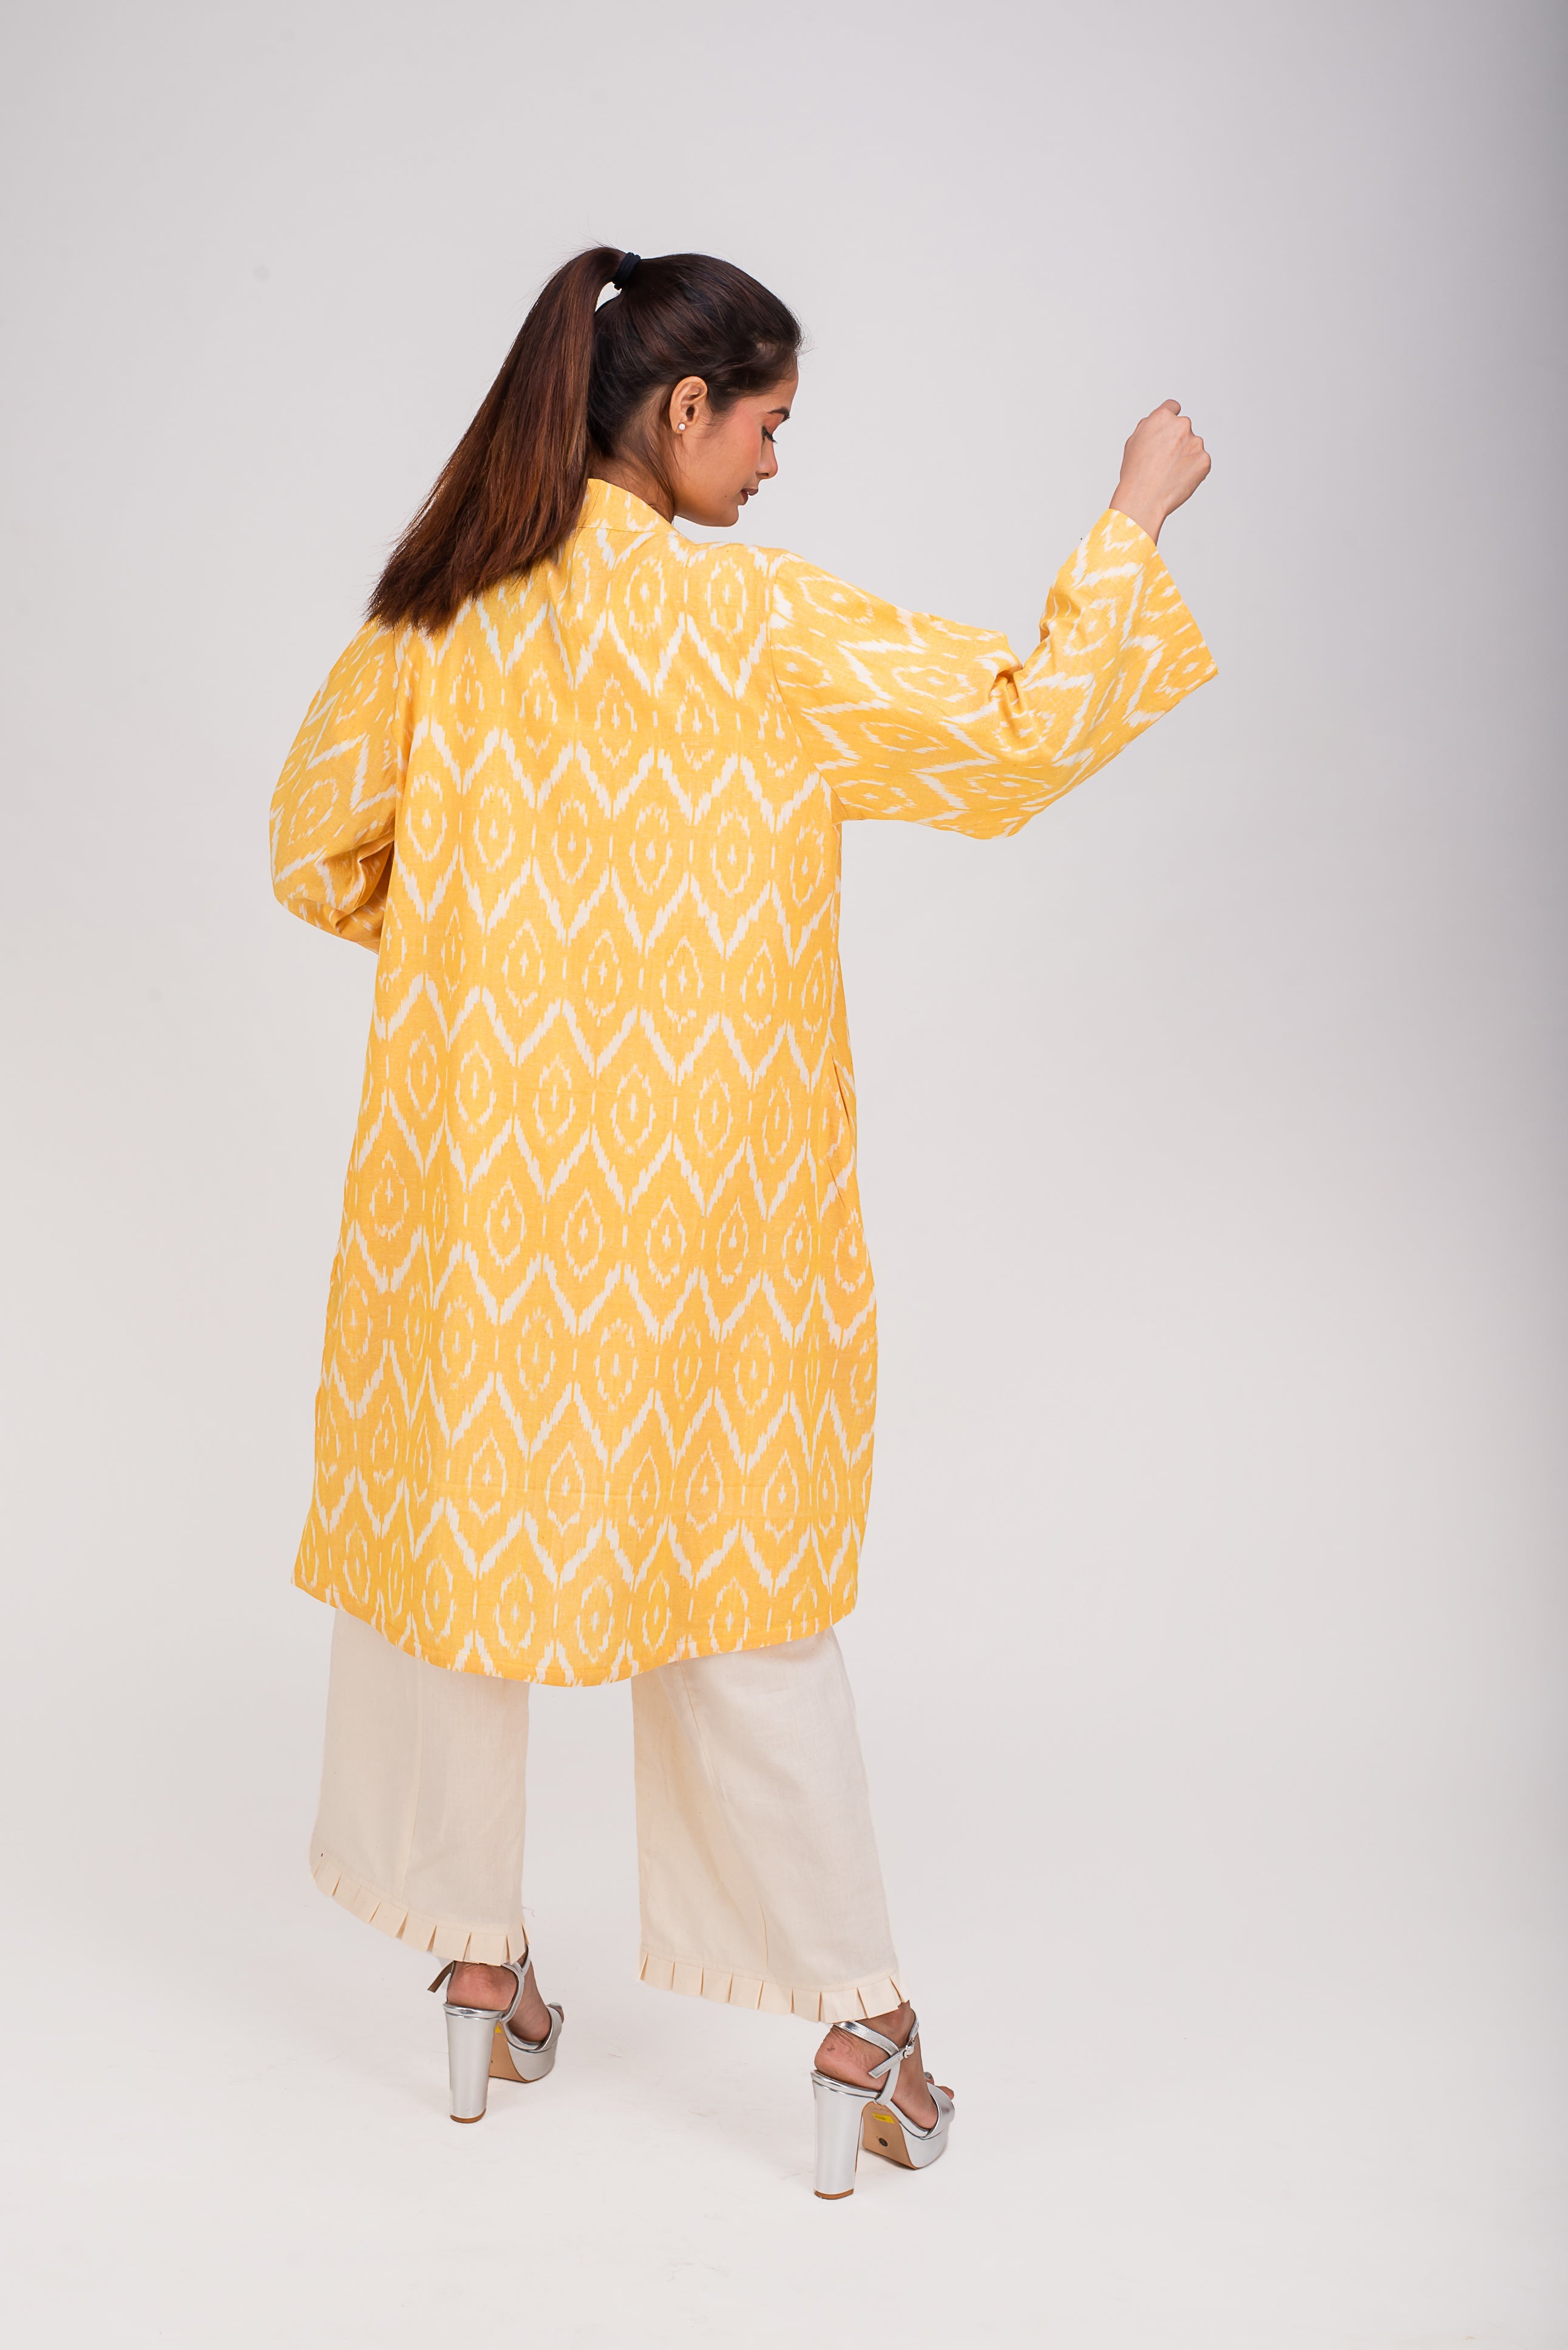 513- 315 Whitelotus "Kimono" Women's coat